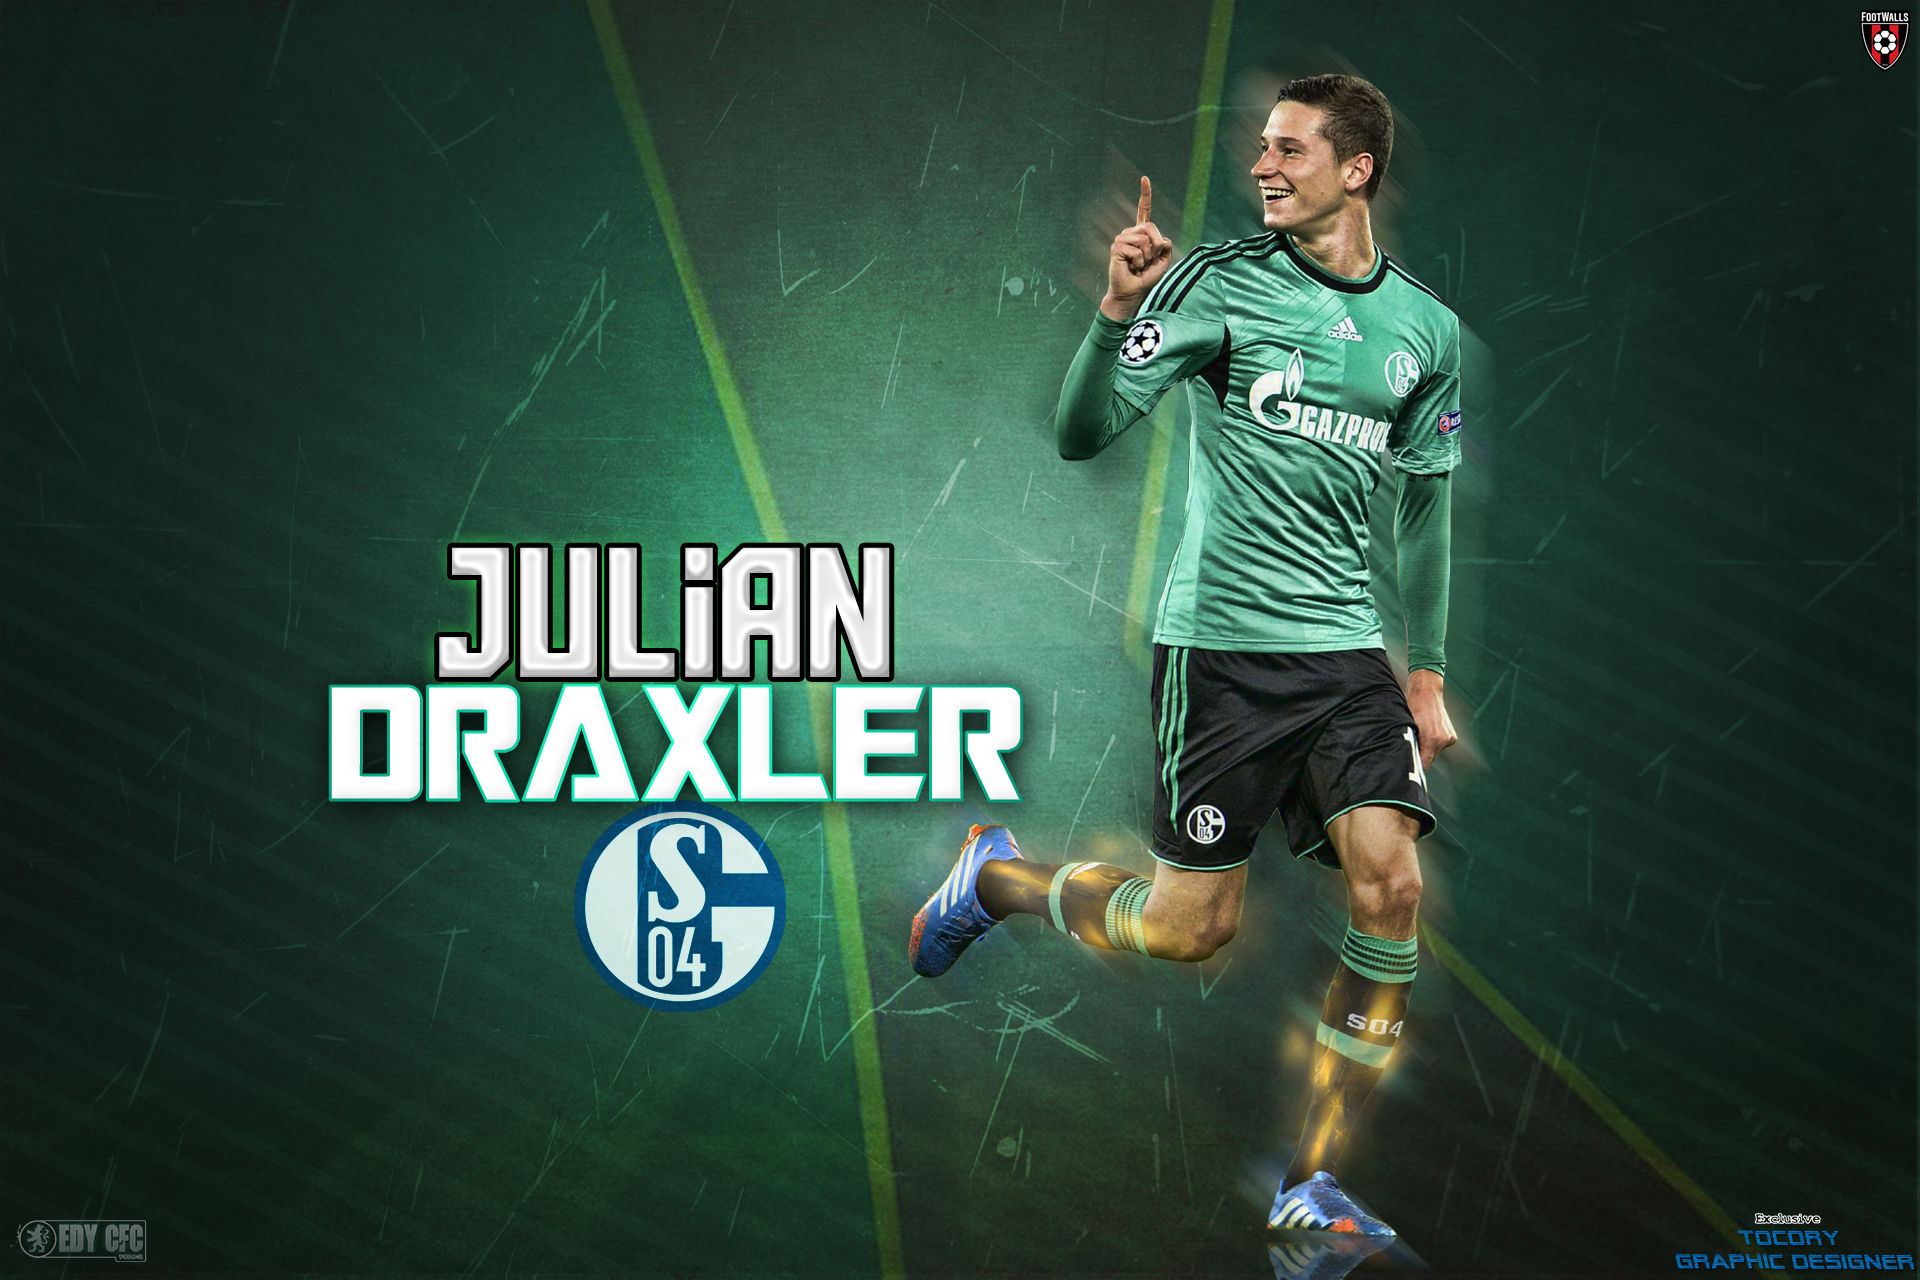 julian draxler wallpaper,football player,player,font,football,soccer player